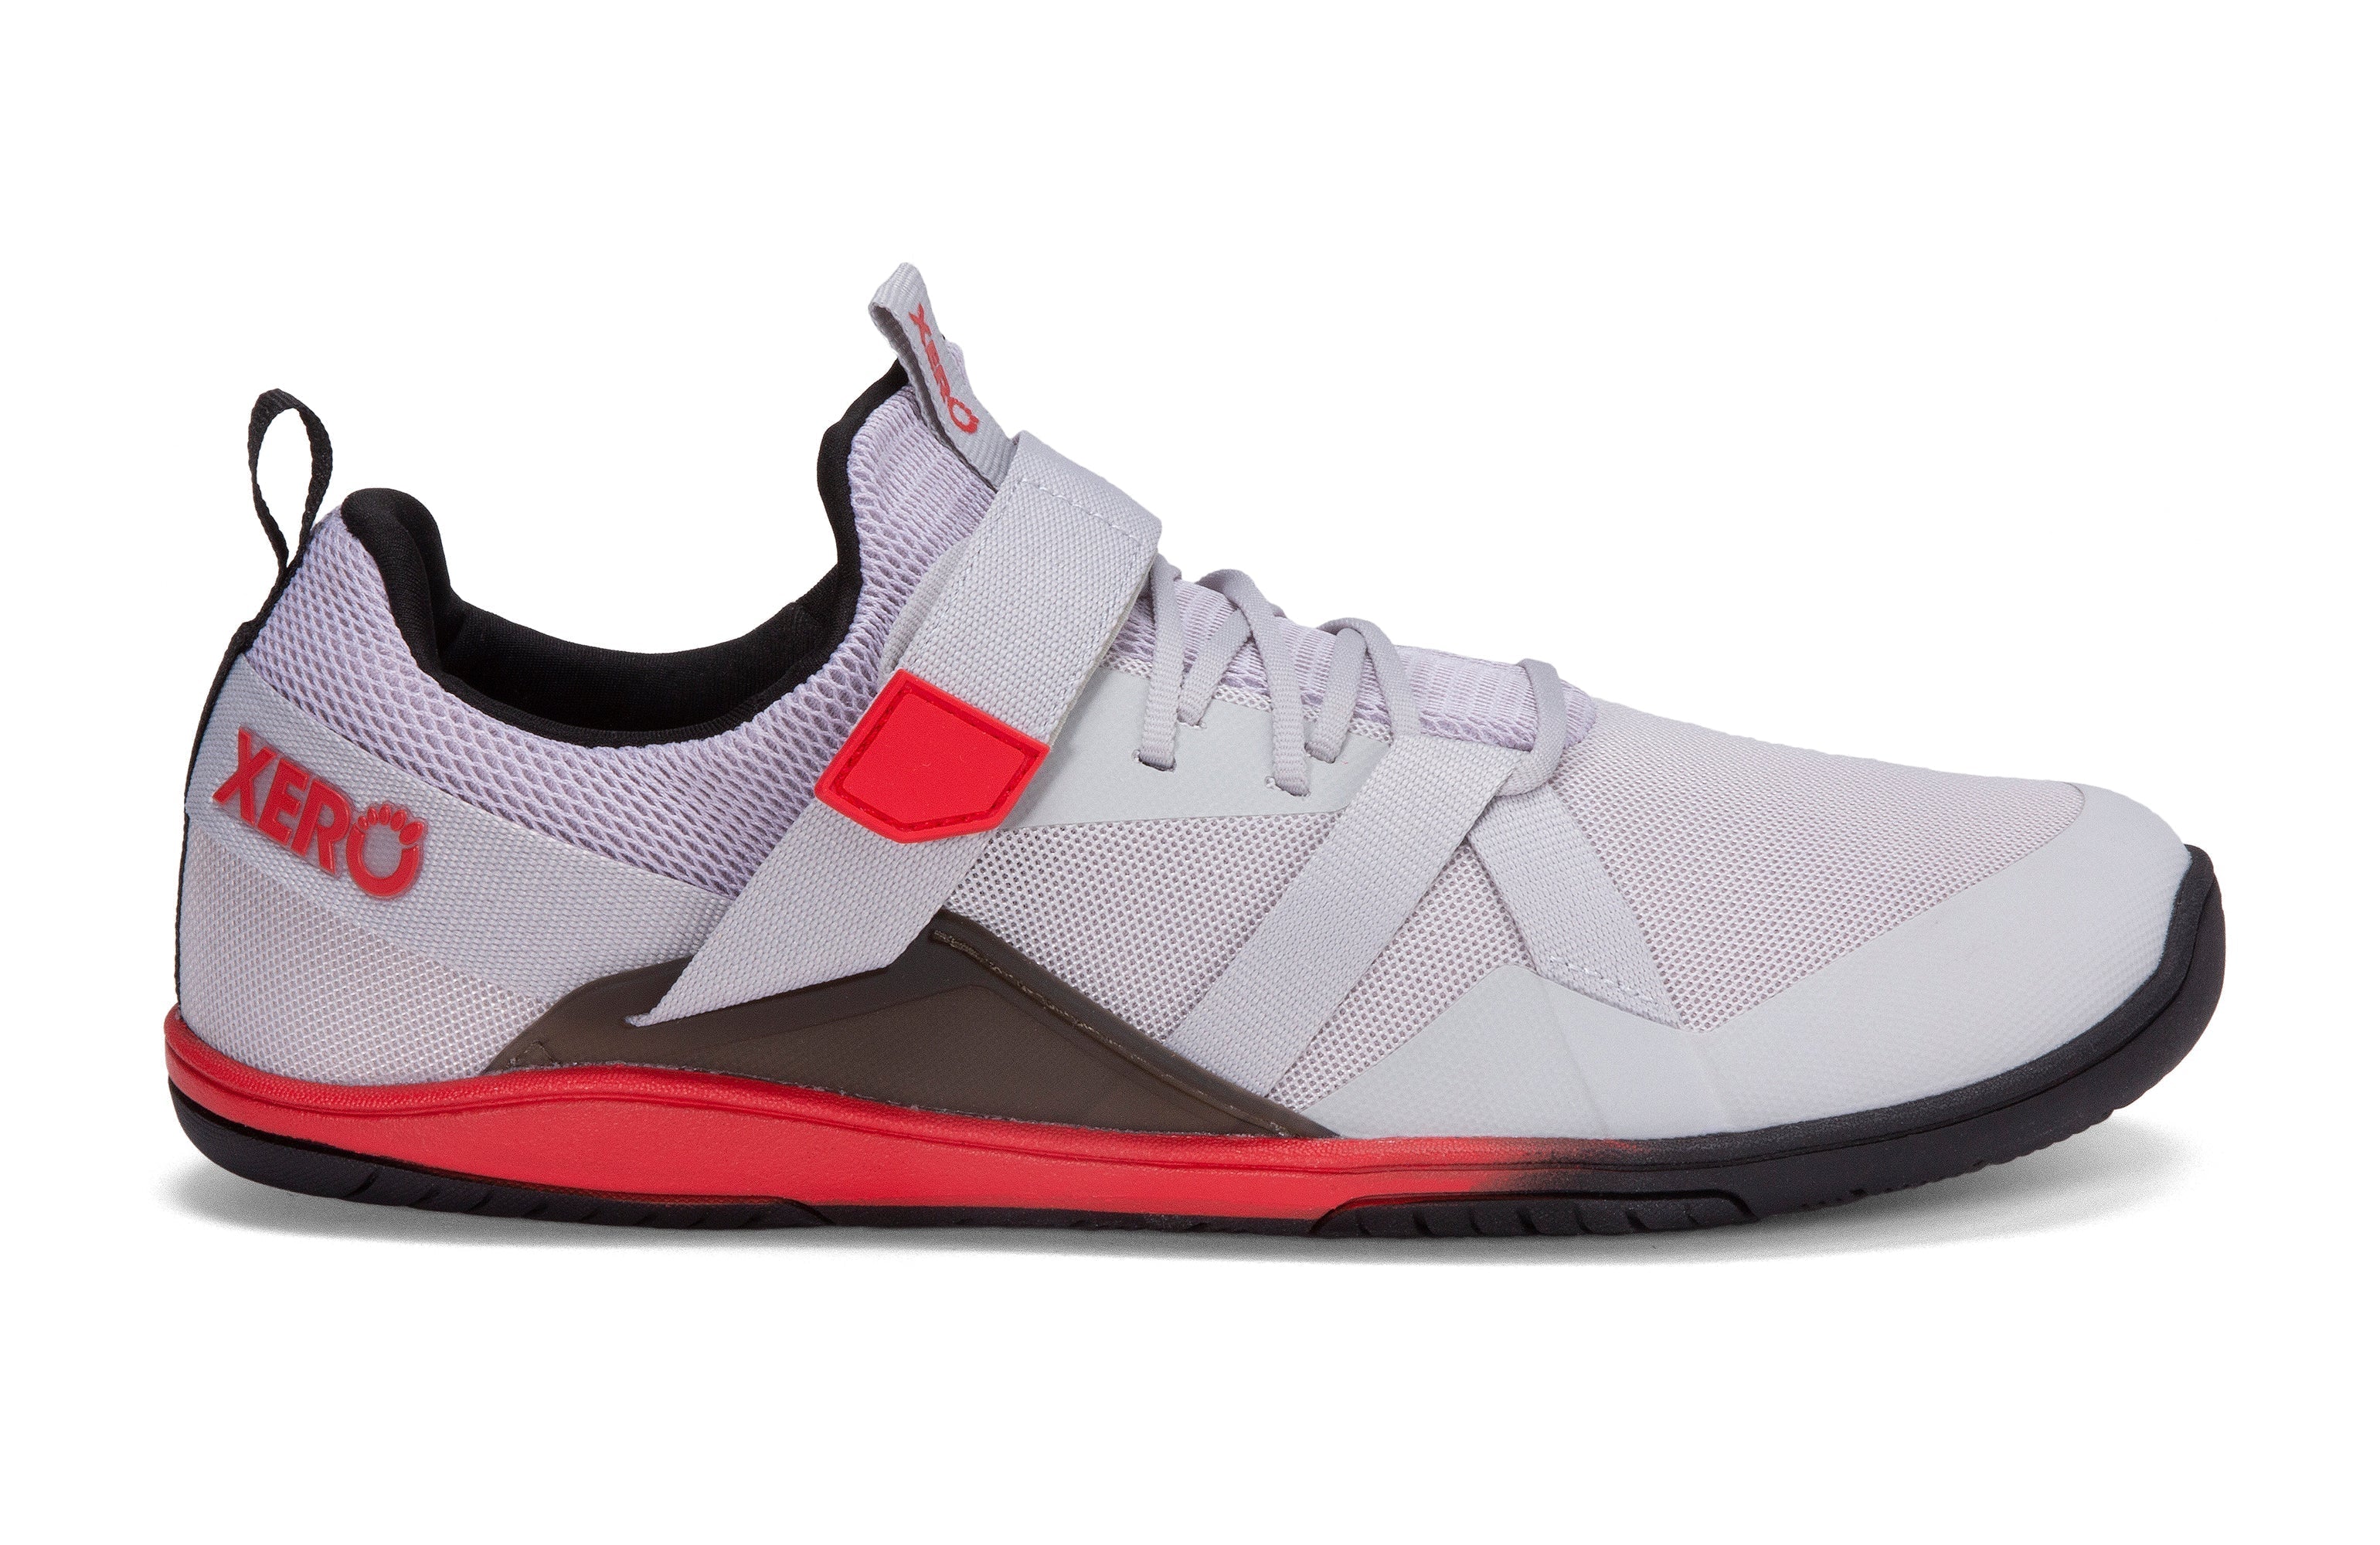 Xero Shoes Forza Trainer Mens barfods træningssko til mænd i farven micro gray / red, yderside